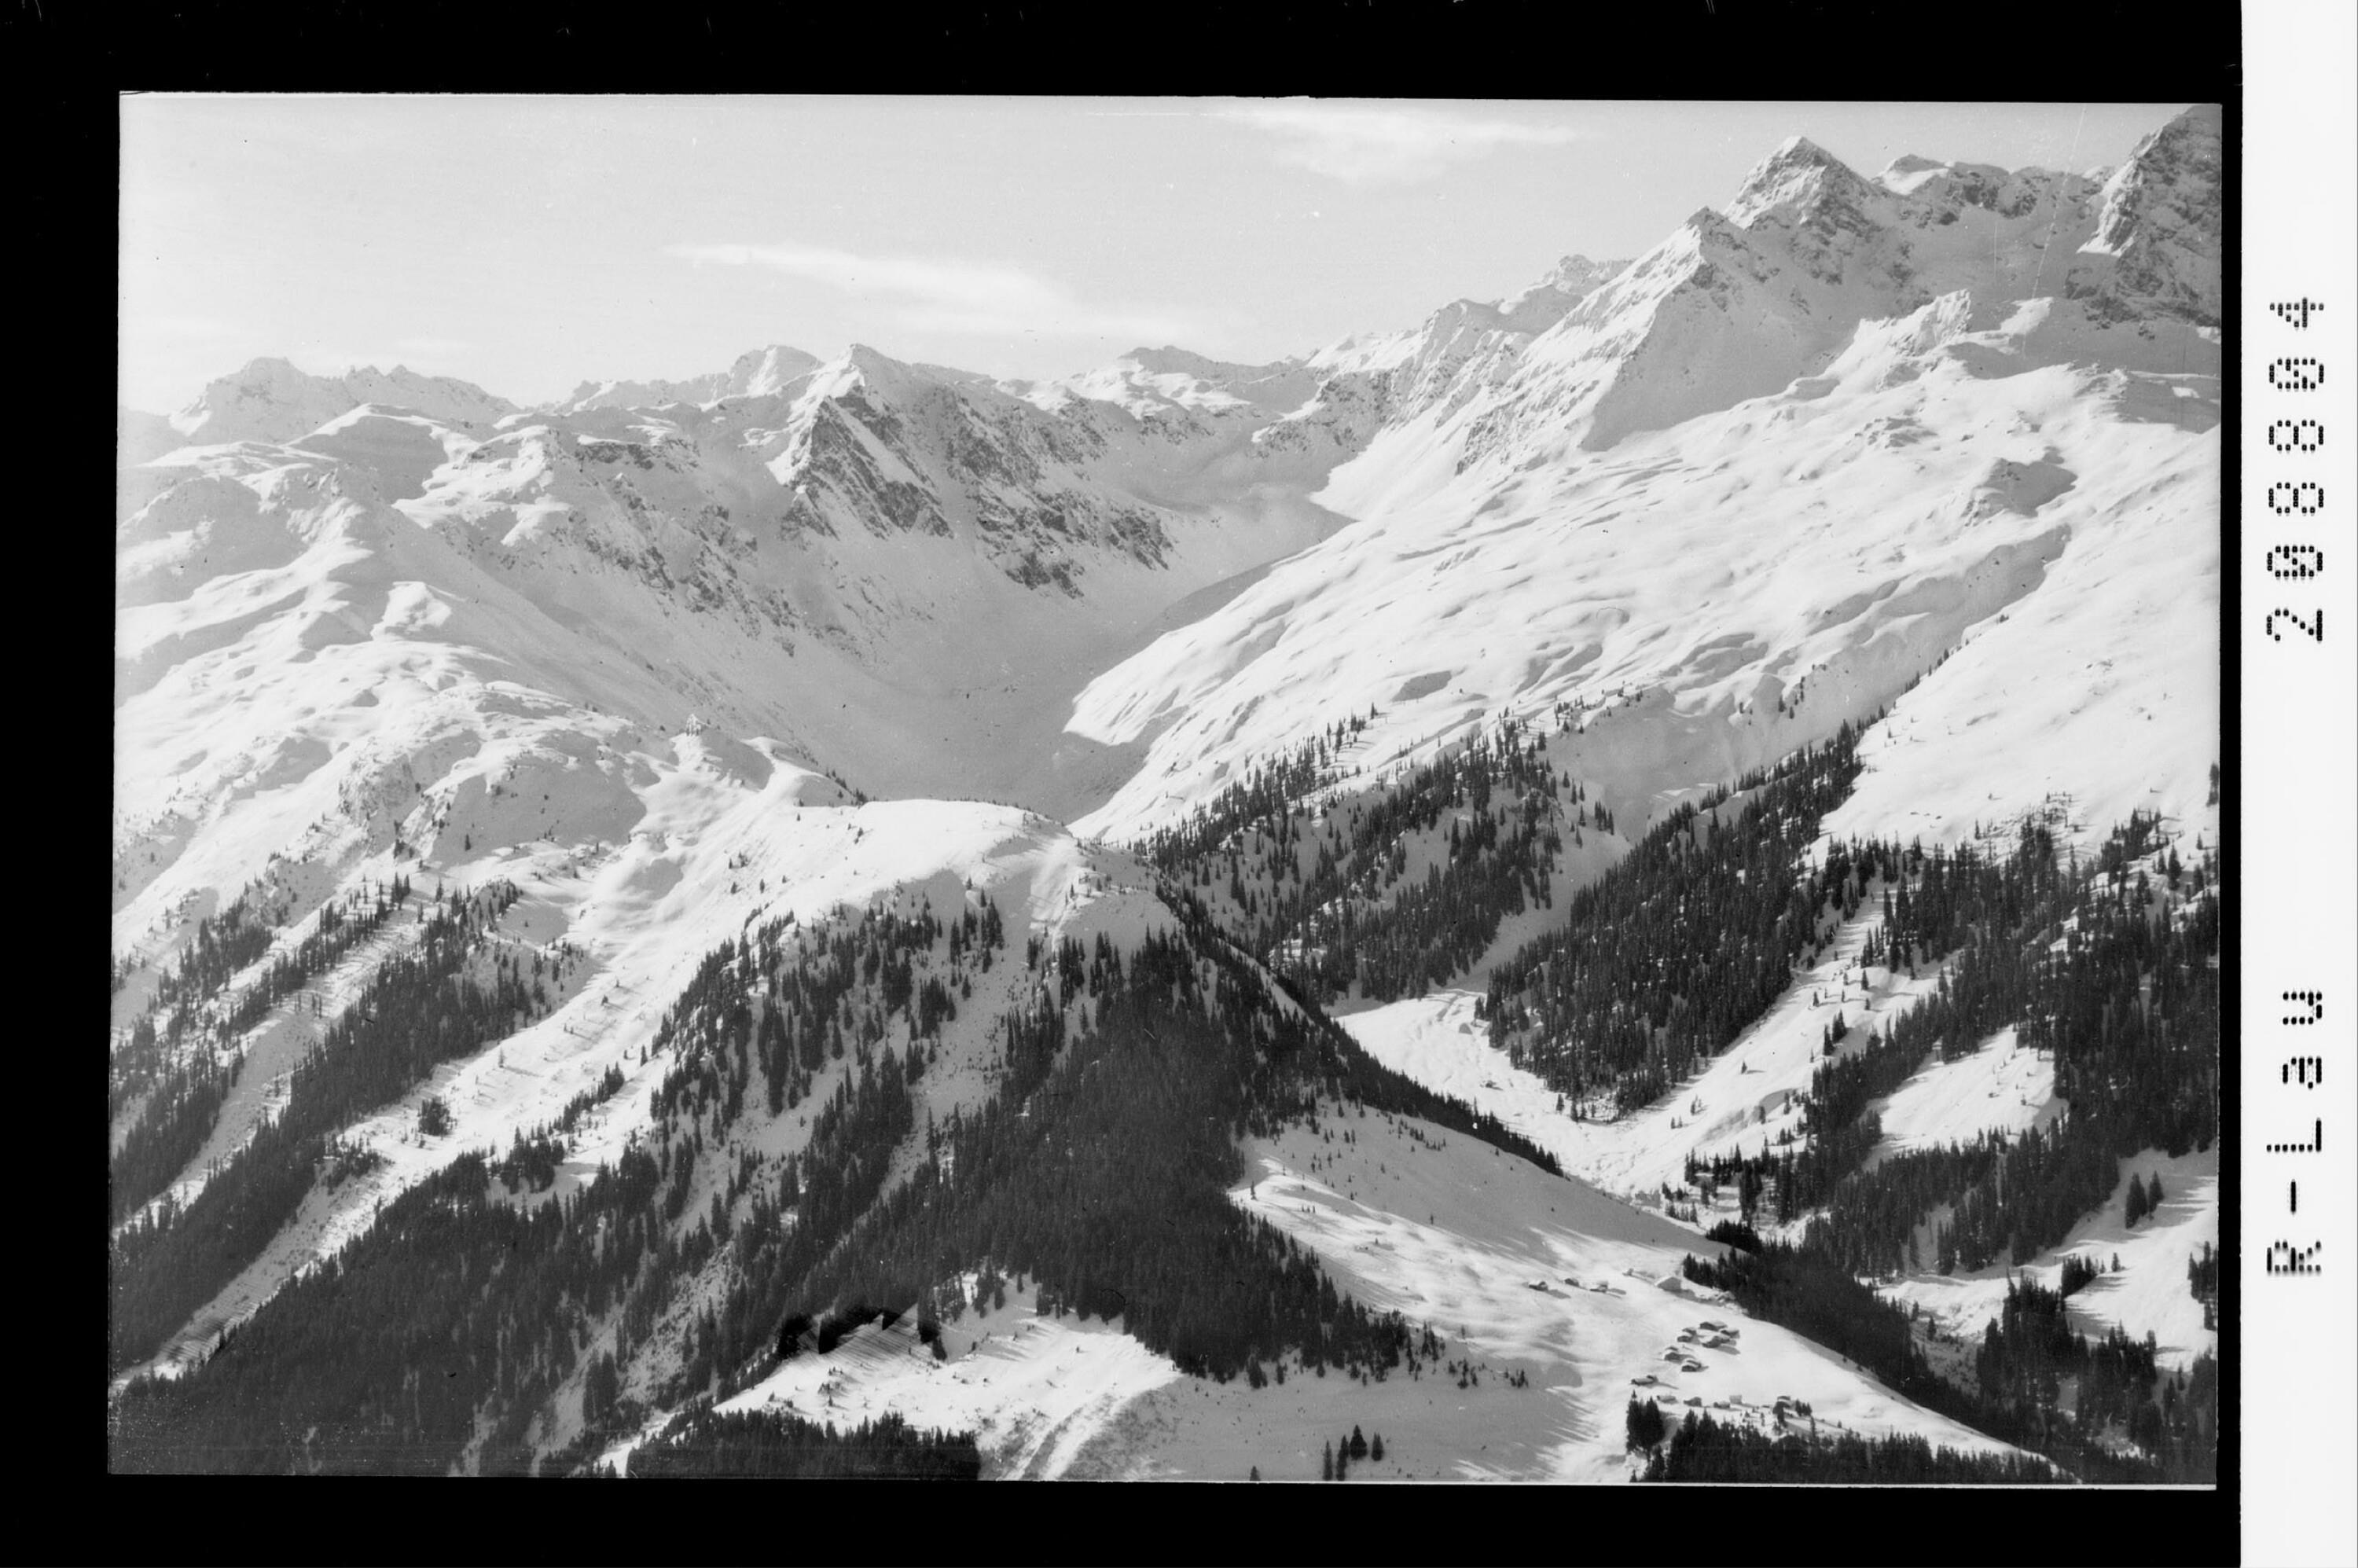 Skigebiet Garfreschen in der Silvretta - Montafon></div>


    <hr>
    <div class=